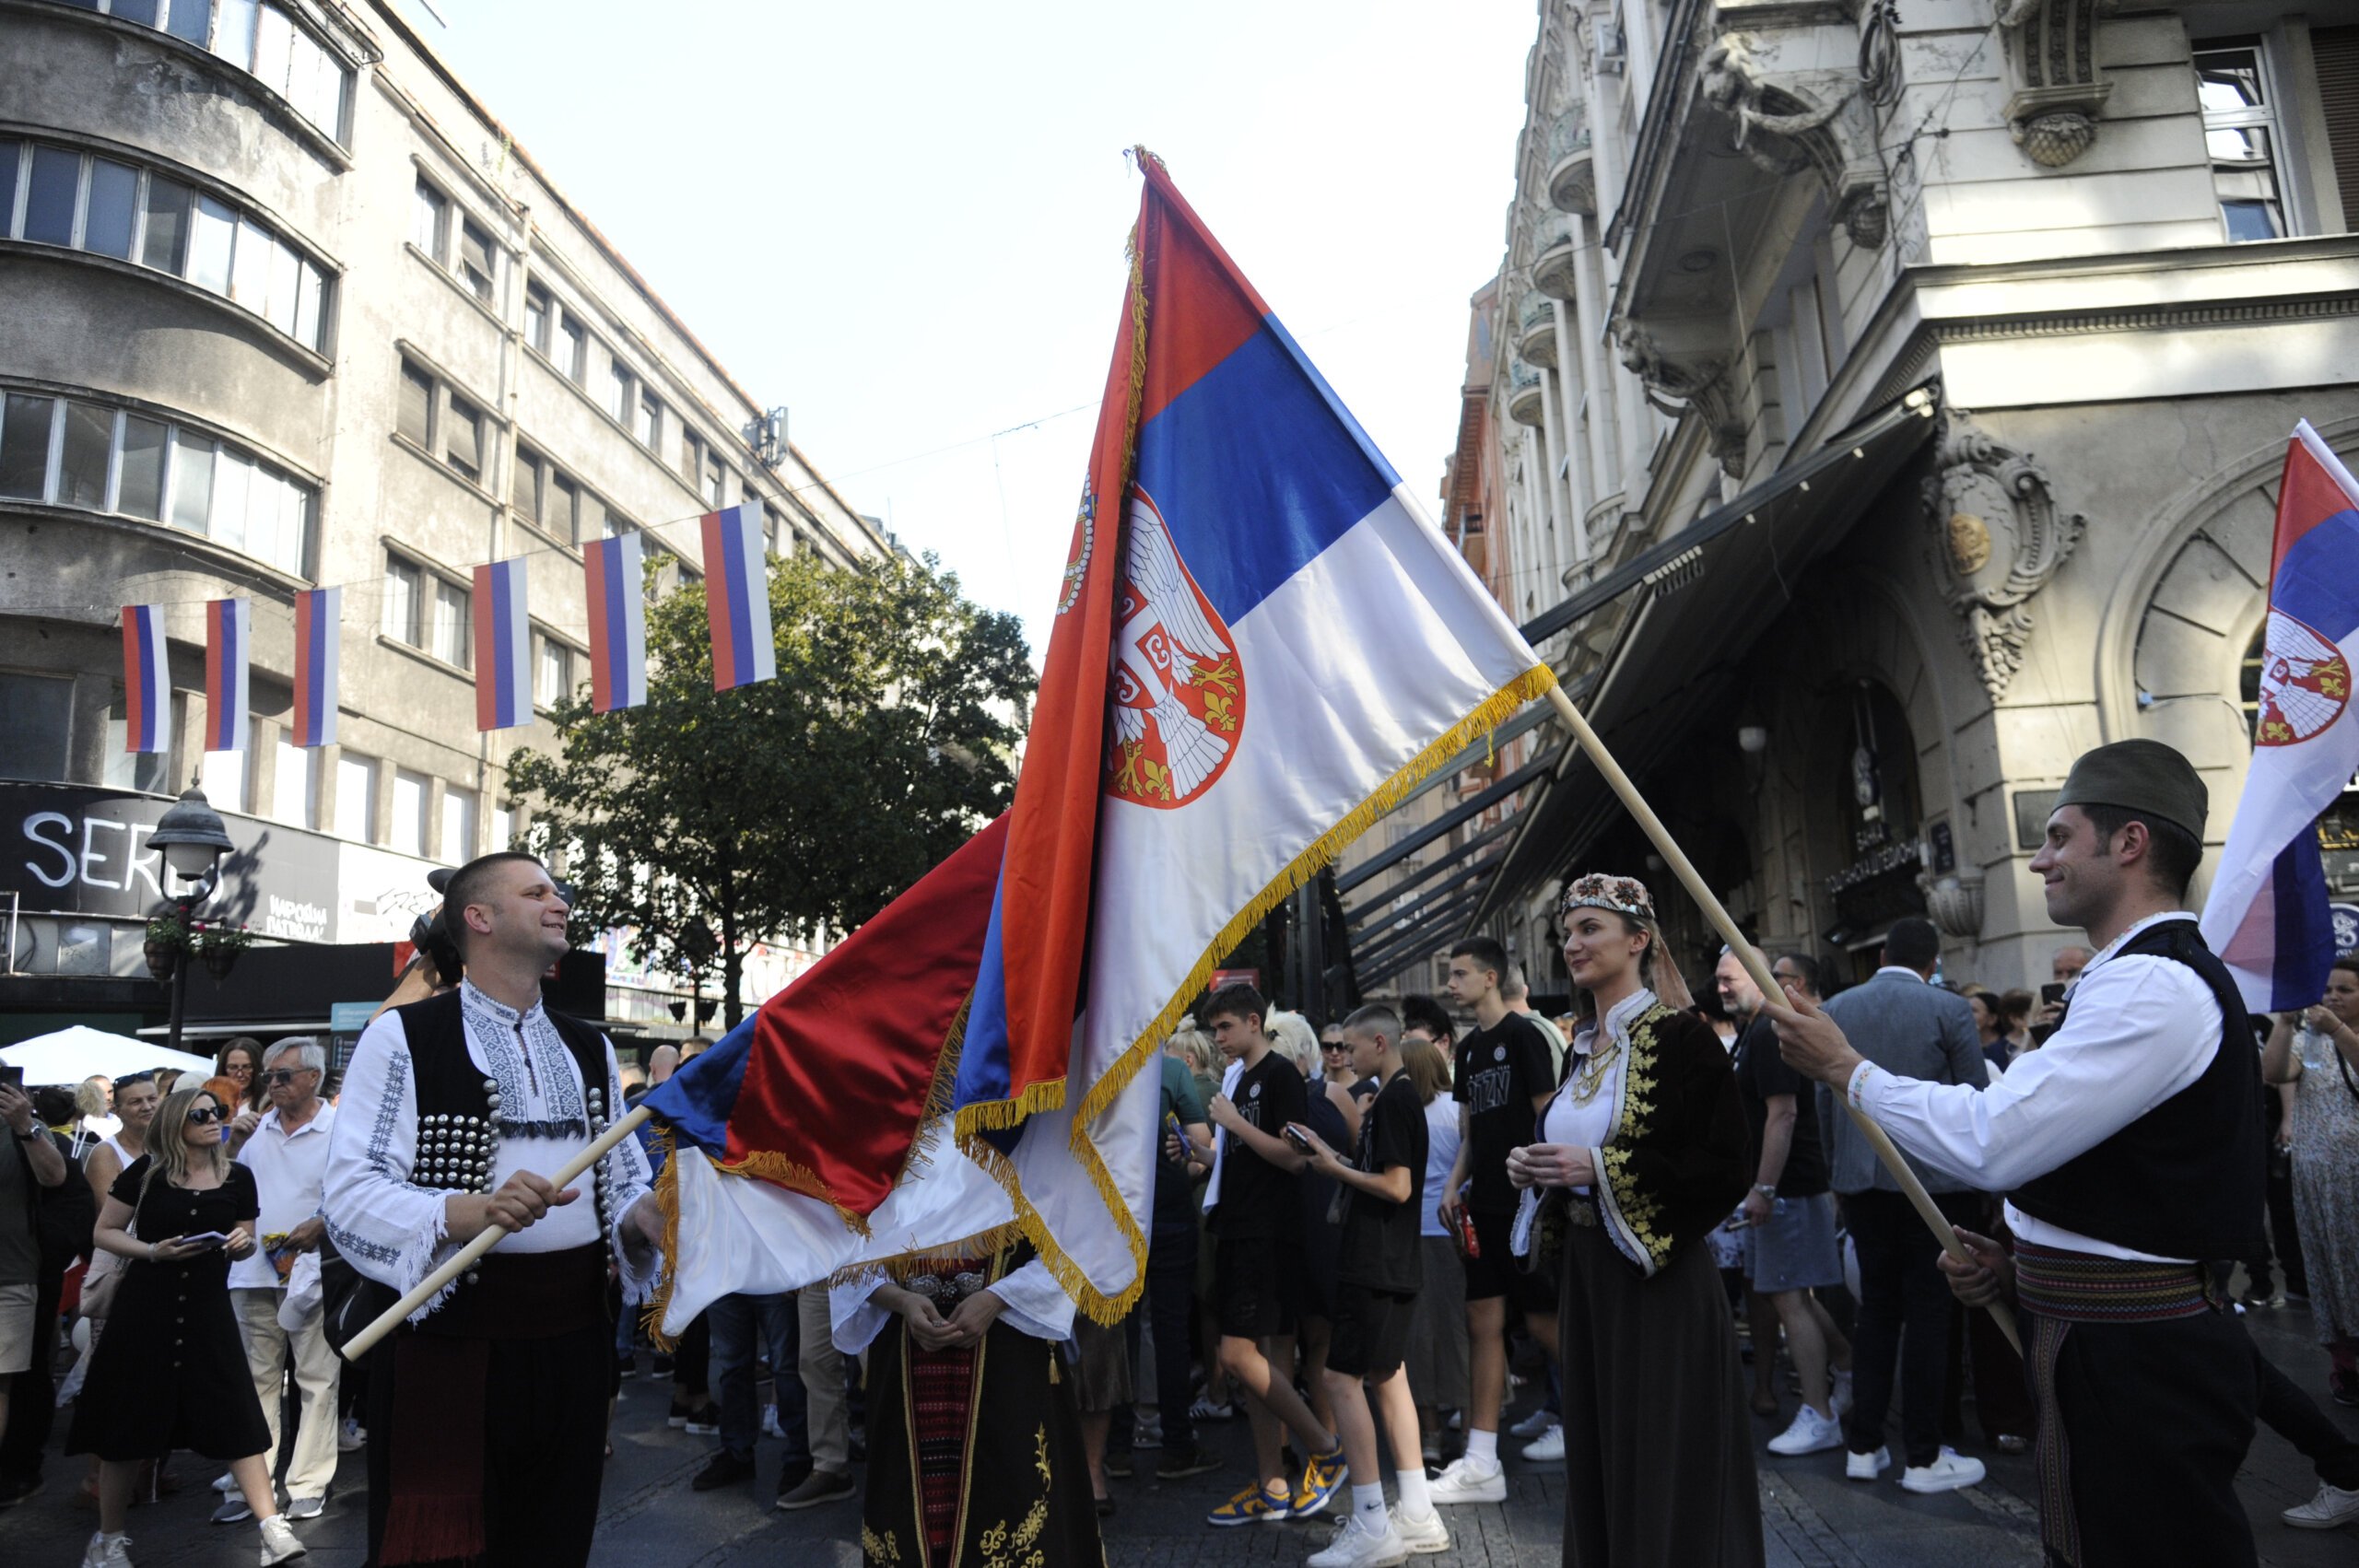 (FOTO) Kako je izgledala manifestacija "Jedan narod, jedan sabor - Srbija i Srpska" na Trgu republike u fotografijama? 18